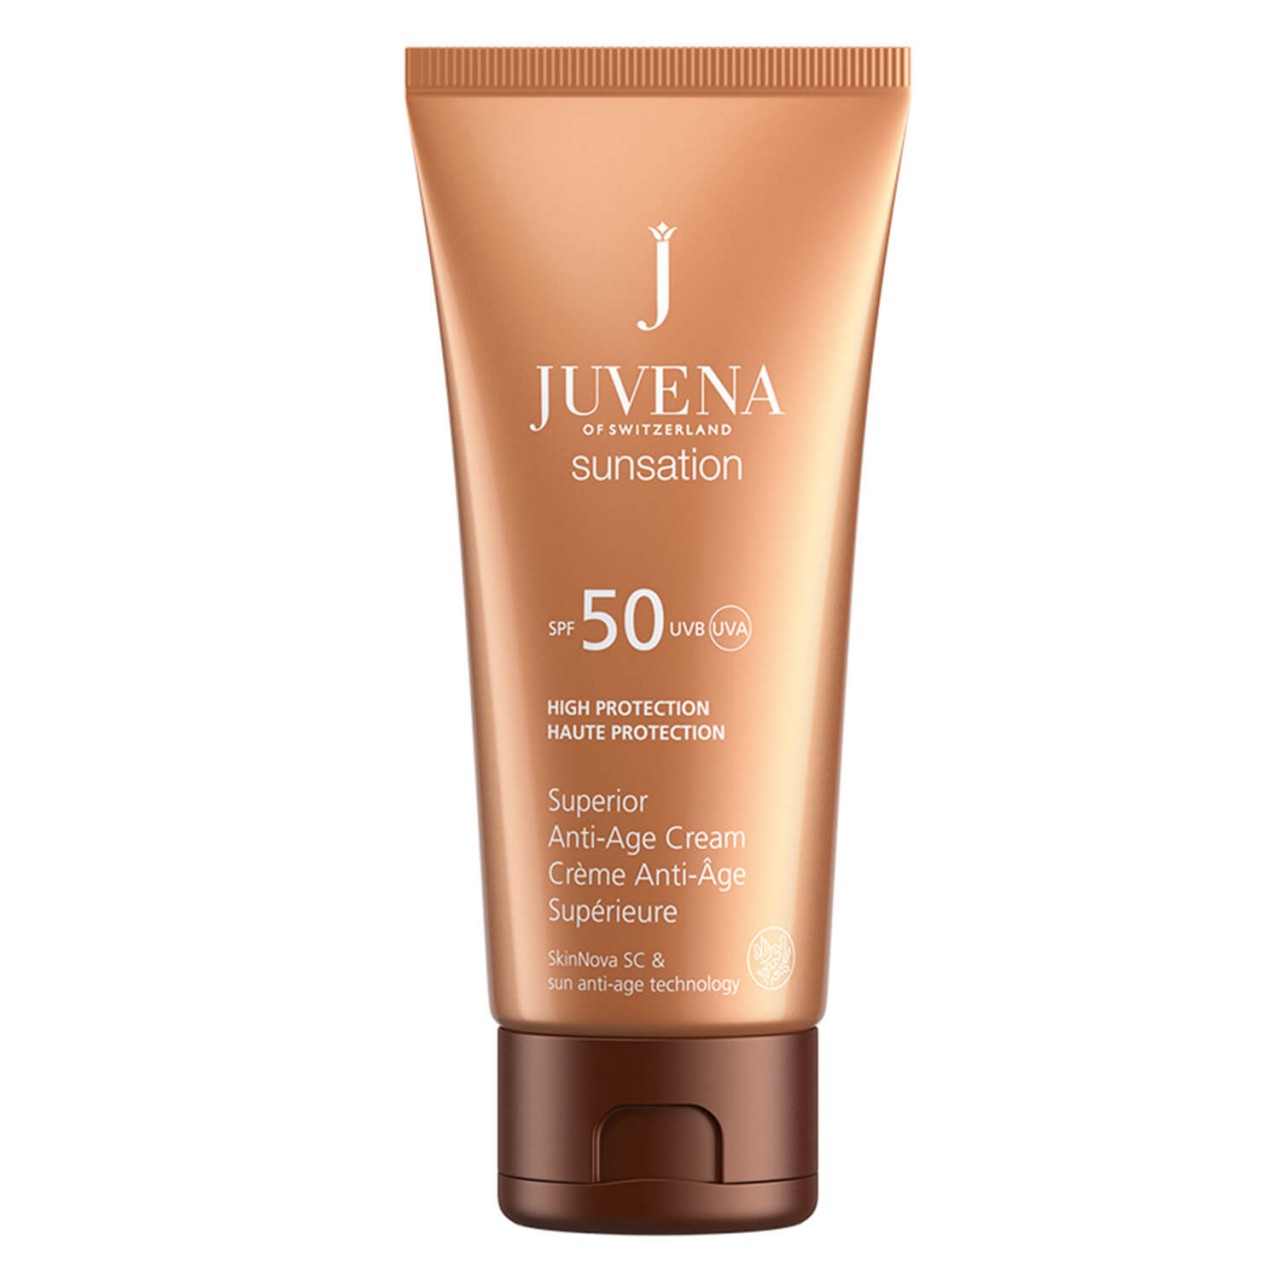 SUNSATION - Superior Anti-Age Cream SPF 50 von JUVENA